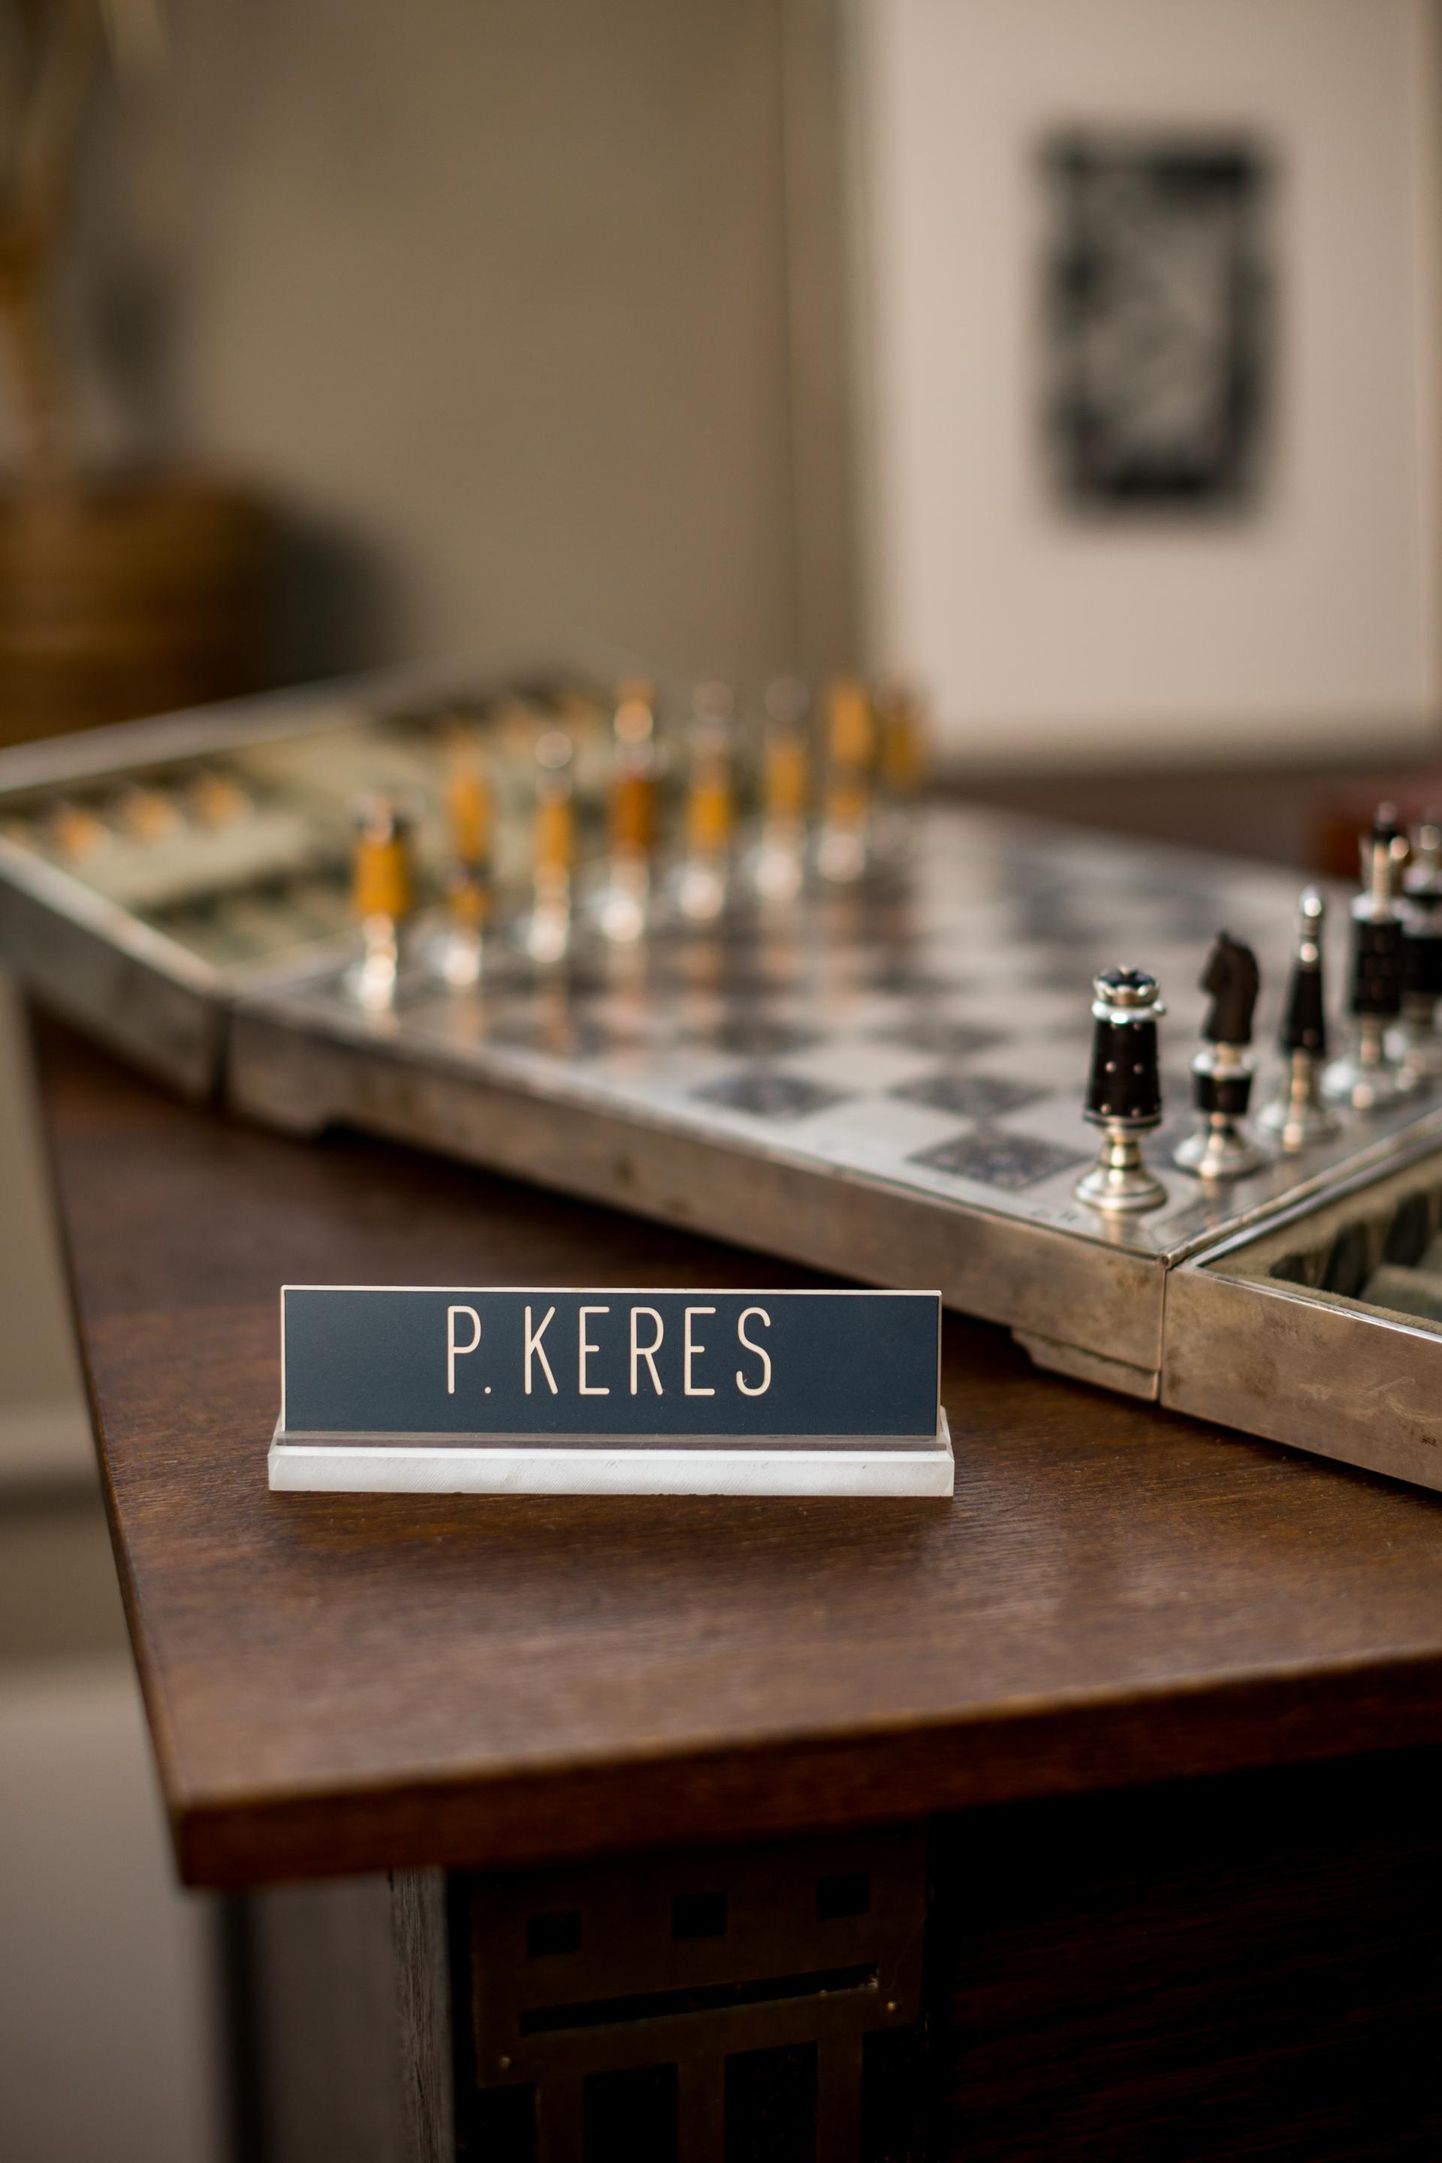 Maletaja Paul Keresele kuulunud hõbedast malekomplekt, mille tema järeltulijad on tallel hoidnud.